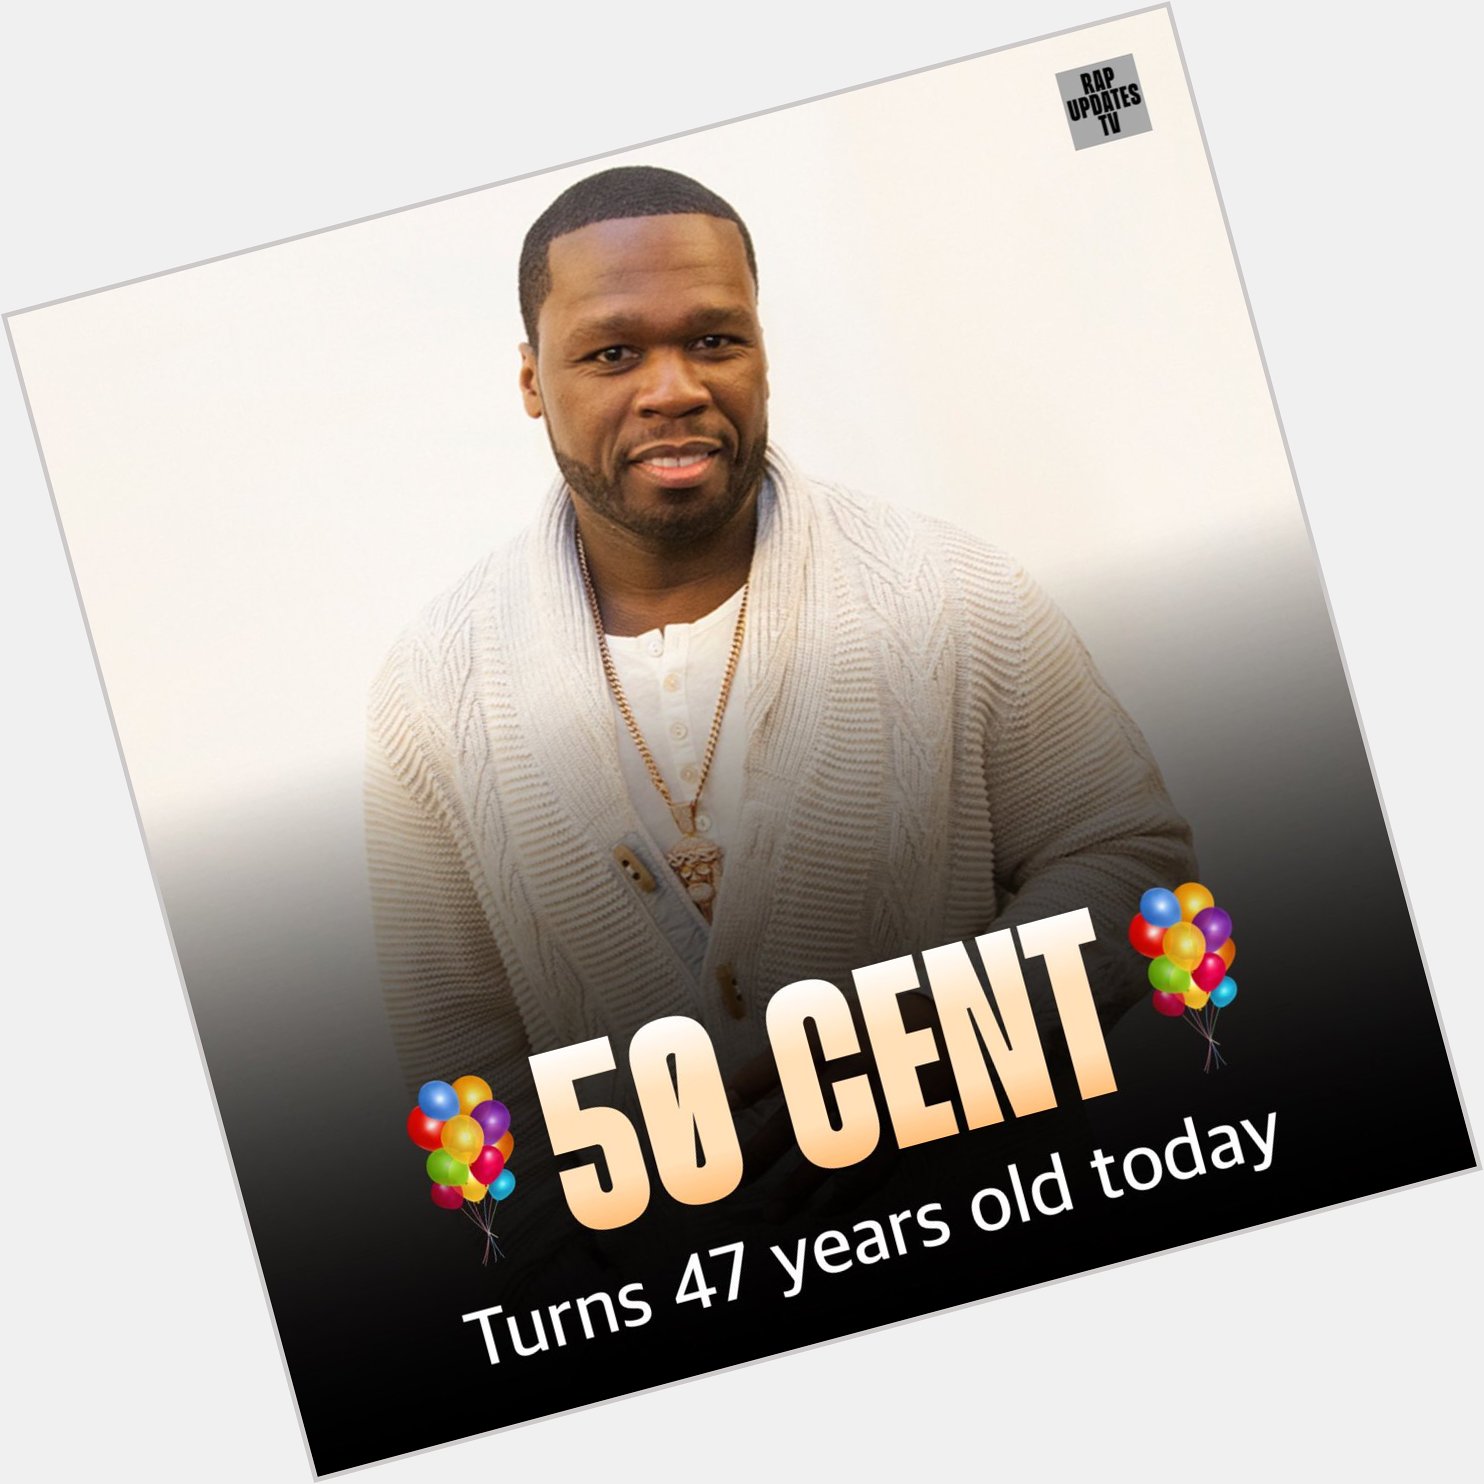 Happy birthday 50 Cent 